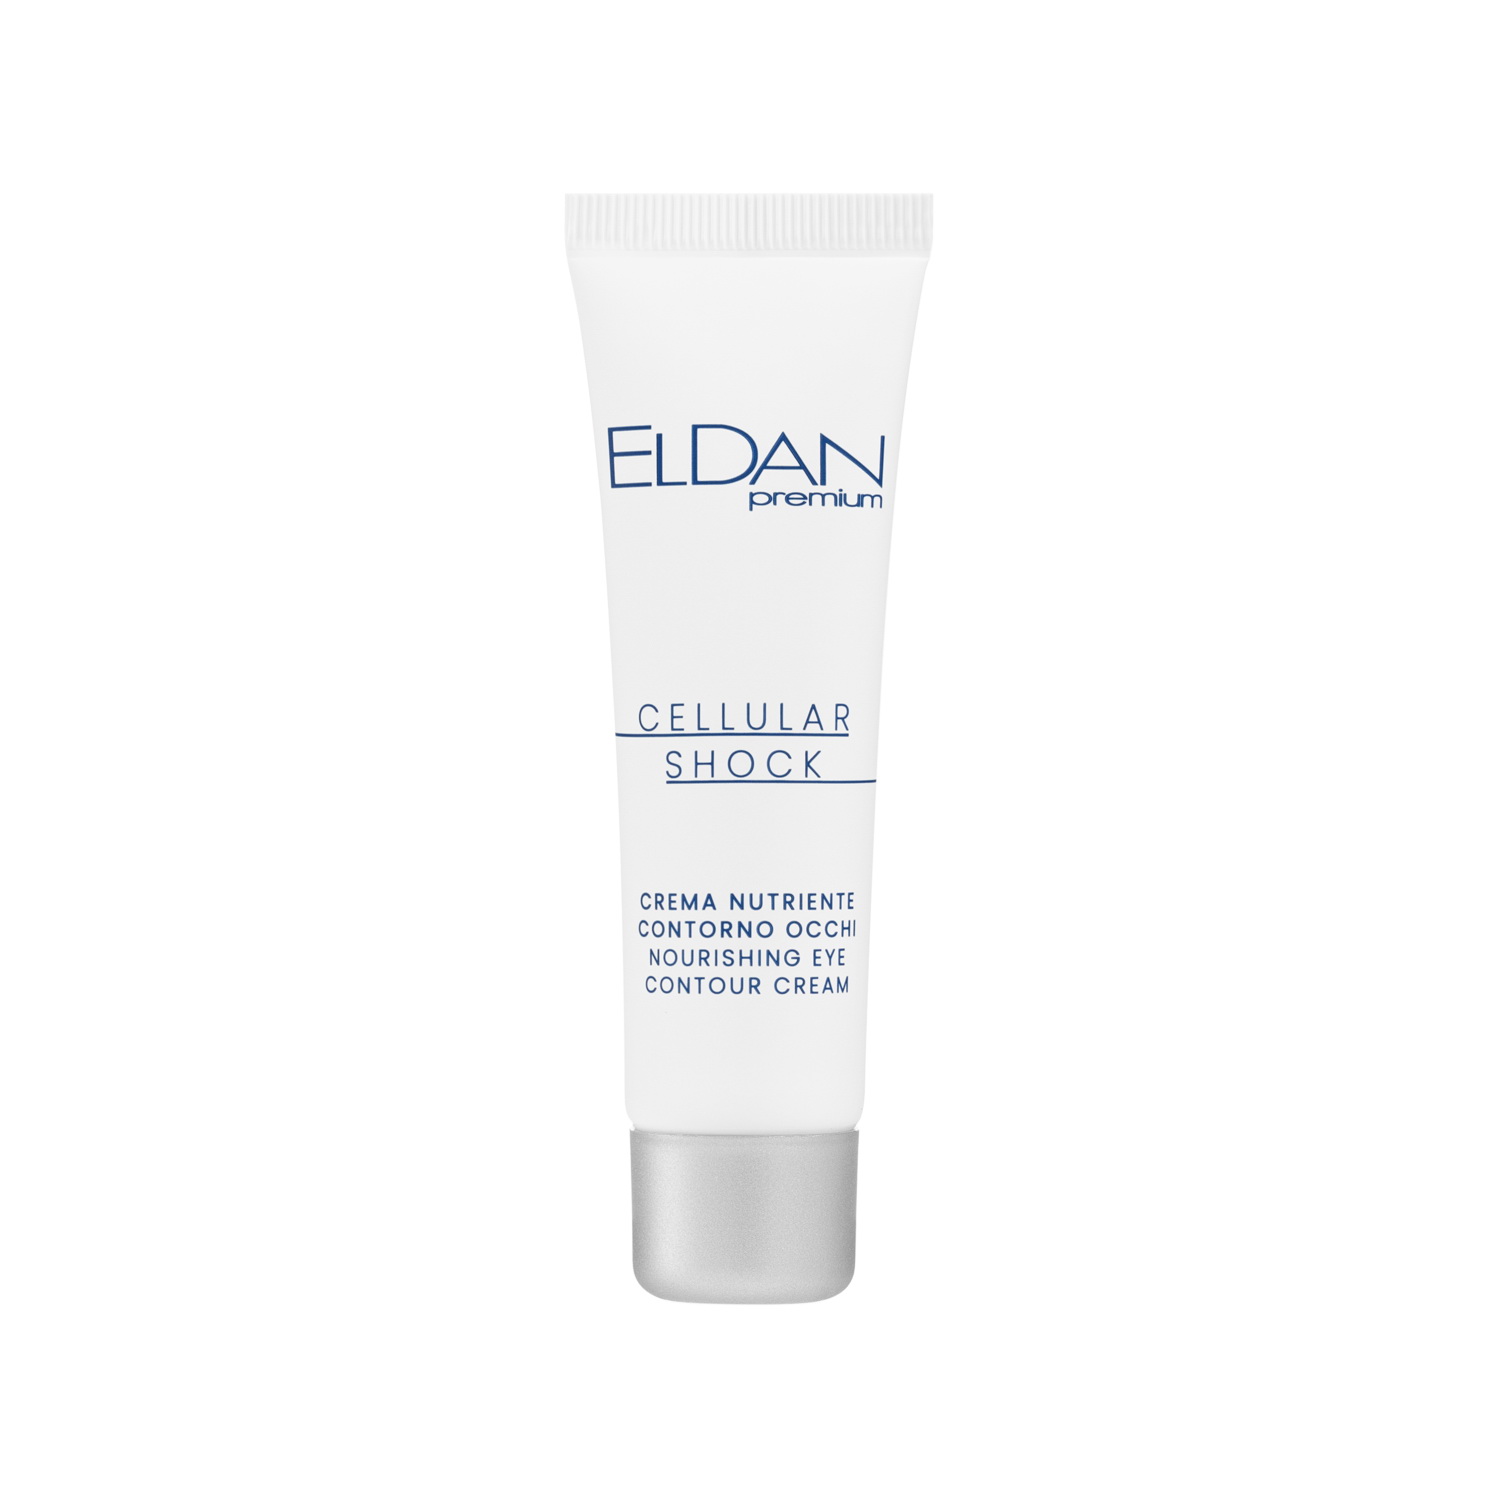 Крем для глаз ELDAN Cosmetics Premium Cellular Shock для увлажнения и питания, 30 мл быстрый стабилиз хлор в табл hth minitab shock 1 2 кг